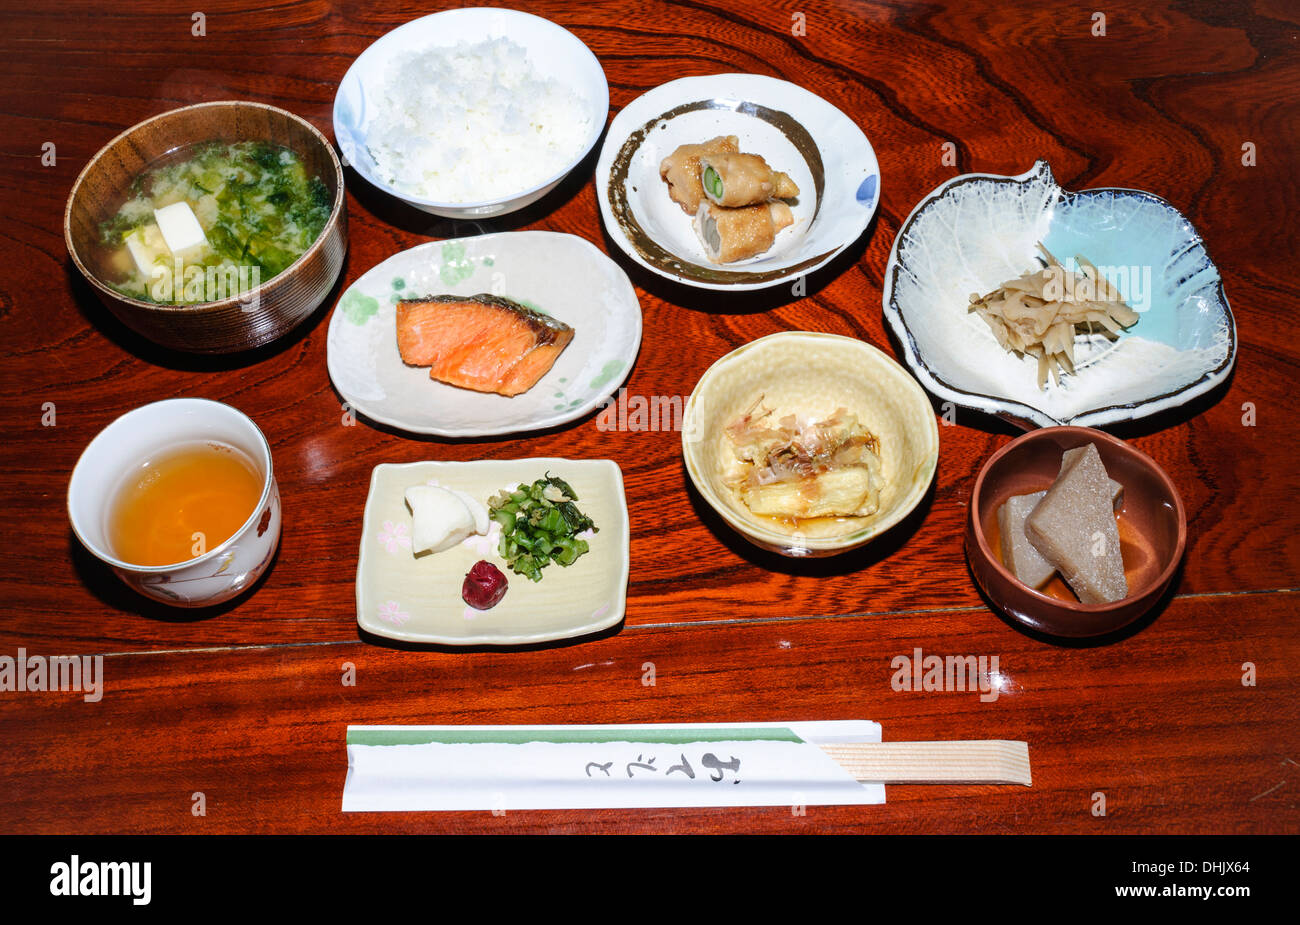 Washoku : repas petit déjeuner traditionnel japonais comme servi dans un ryokan (auberge de style traditionnel), avec de nombreux plats servis à la fois. Le Japon, de l'alimentation. Banque D'Images